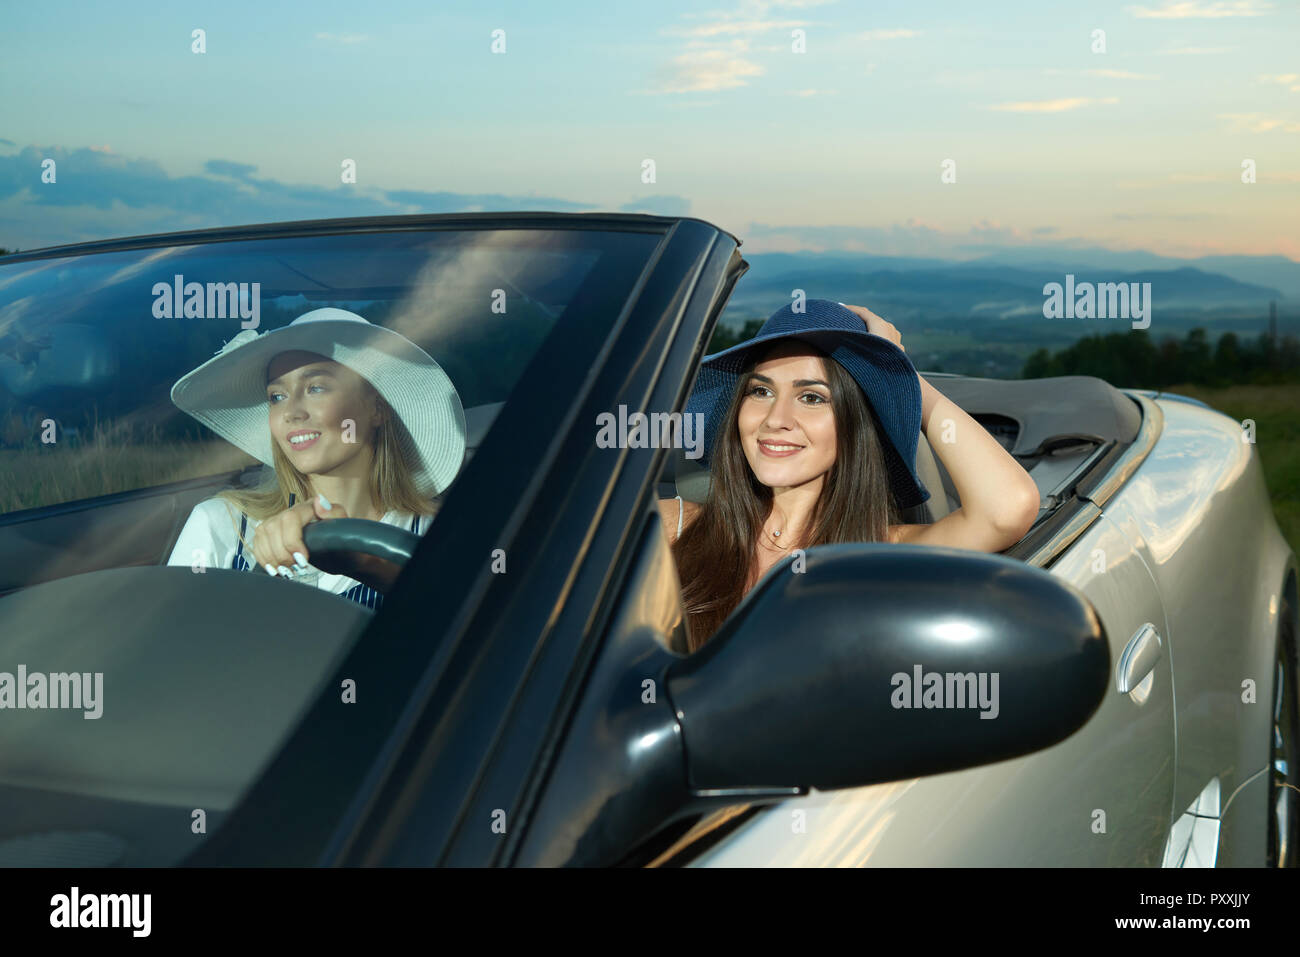 Hübsche Modelle in Dunkelblau und Weiß Rand breite Hüte sitzen auf Vordersitzen von Silber Cabrio. Adorable Mädchen fahren Auto, weg schauen und lächeln. Konzept von luxuriösen Automobil und Reise. Stockfoto